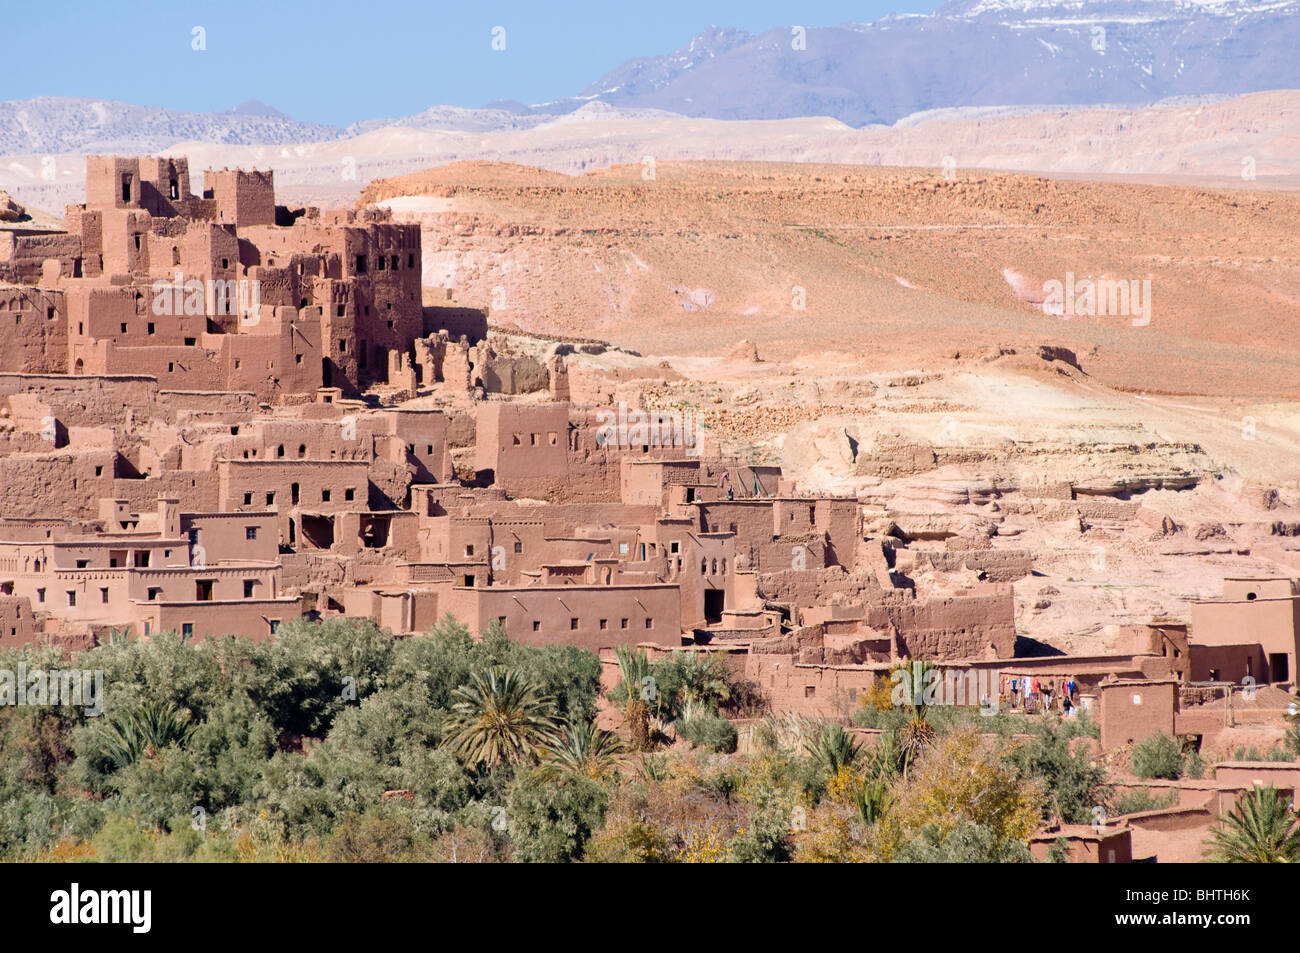 La forteresse militaire à l'Ait Benhaddou, Maroc Banque D'Images